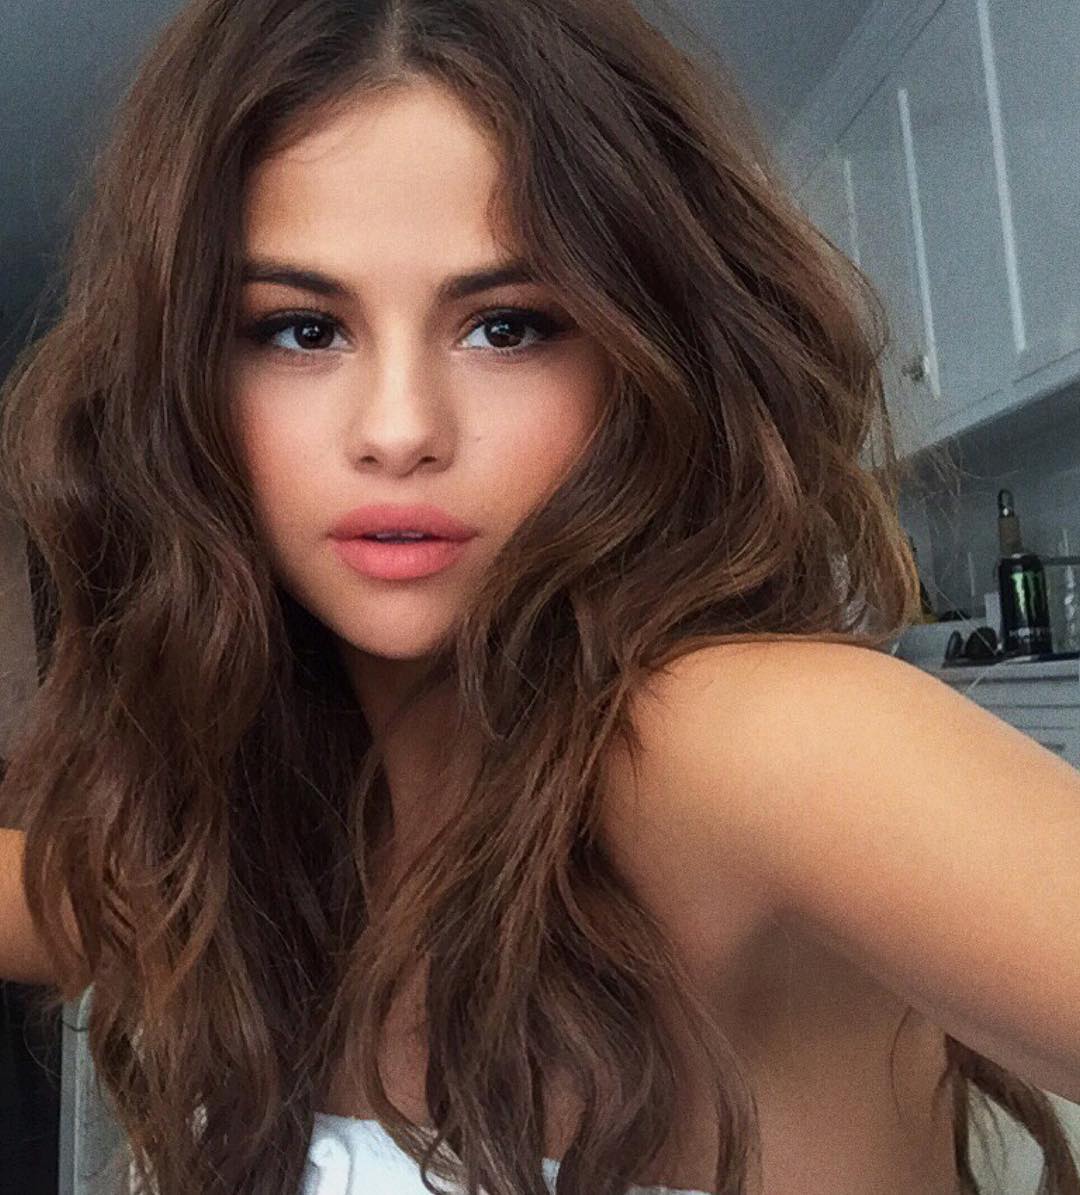 Kiểu tóc của Selena Gomez: Nếu bạn yêu thích Selena Gomez thì chắc chắn bạn sẽ muốn biết thêm về kiểu tóc của cô nàng. Với nhiều kiểu tóc độc đáo và cá tính, Selena luôn khiến fan hâm mộ phát sốt với phong cách của mình. Hãy xem ngay hình ảnh liên quan để mê mẩn với kiểu tóc của Selena Gomez.